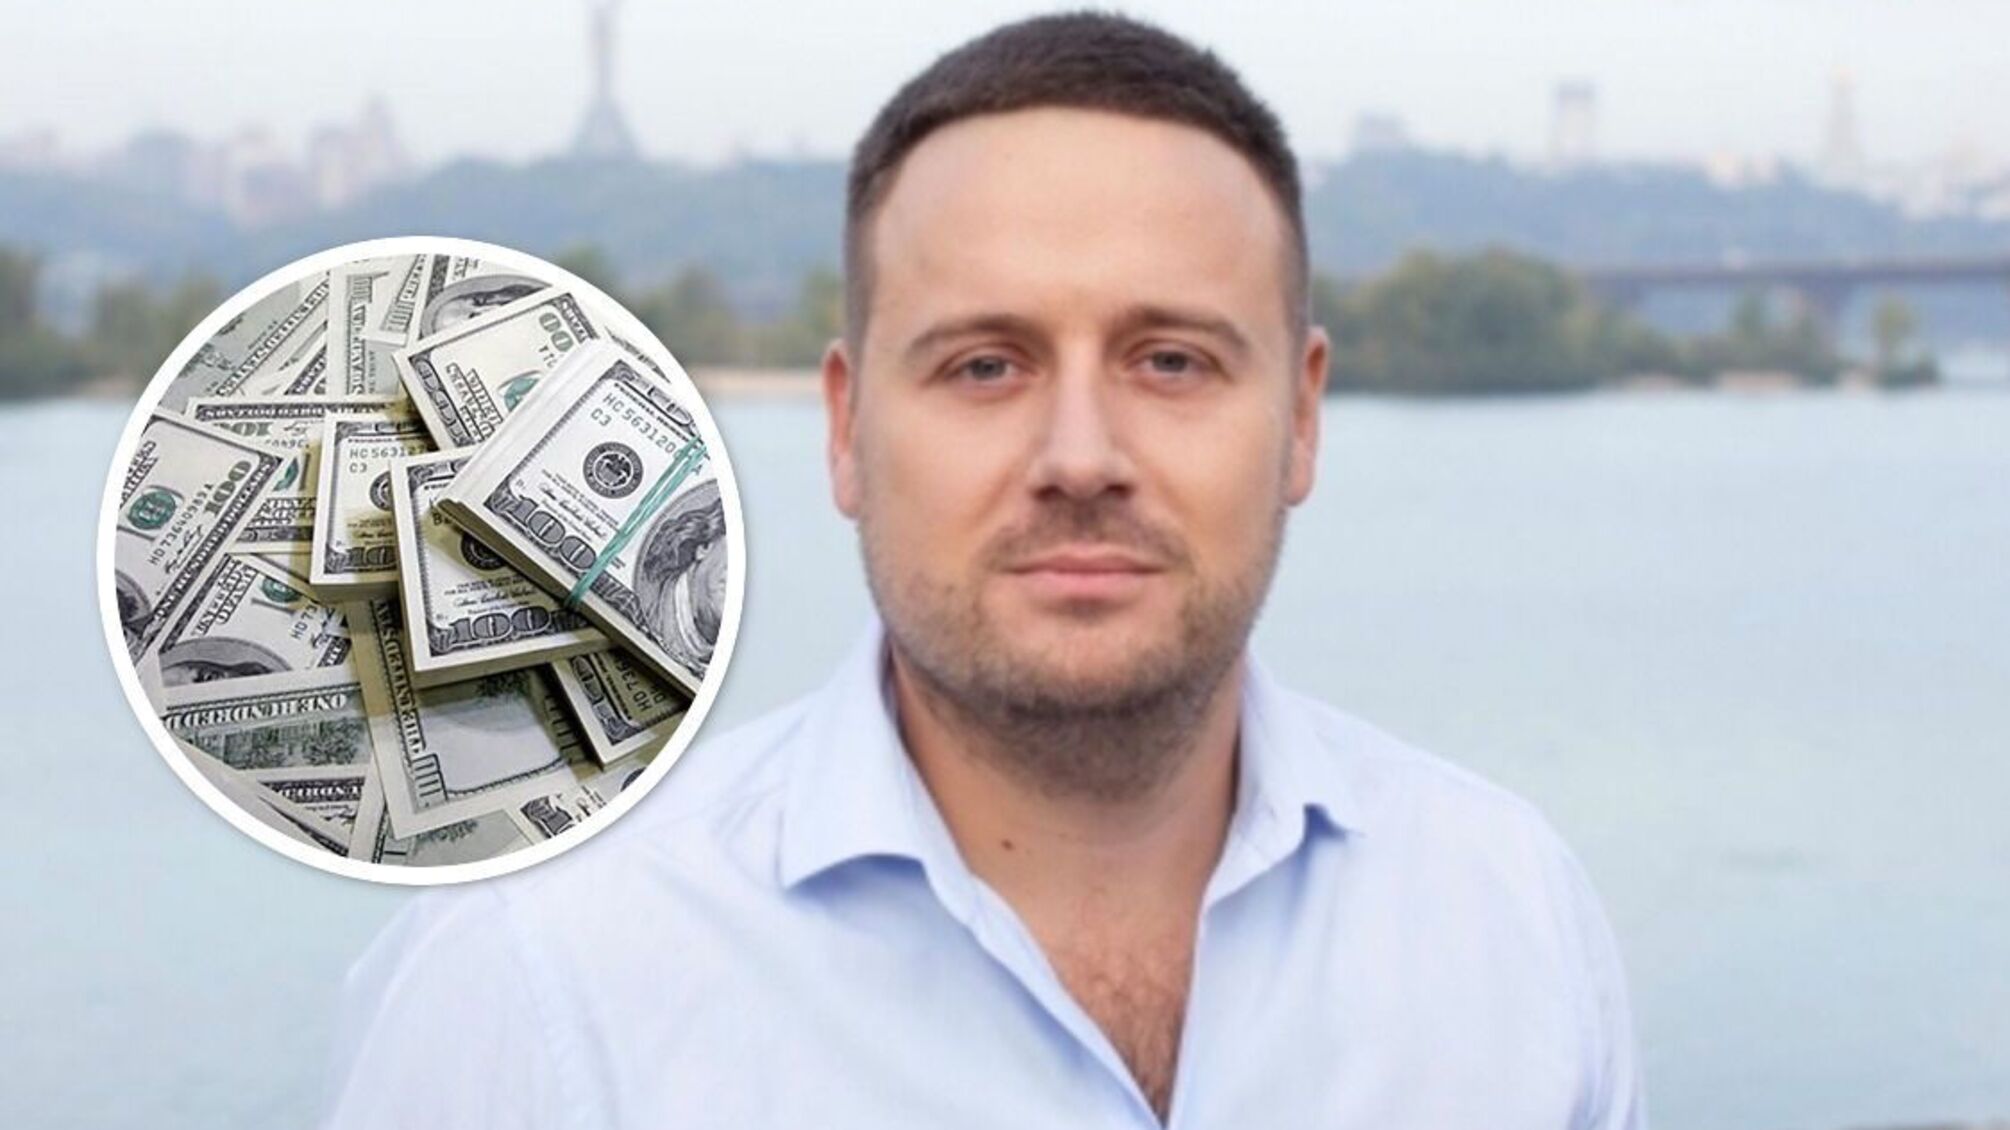 Співголова 'Батьківщини' в Київраді Слончак отримав від матері $300 000 як 'подарунок', – НАЗК